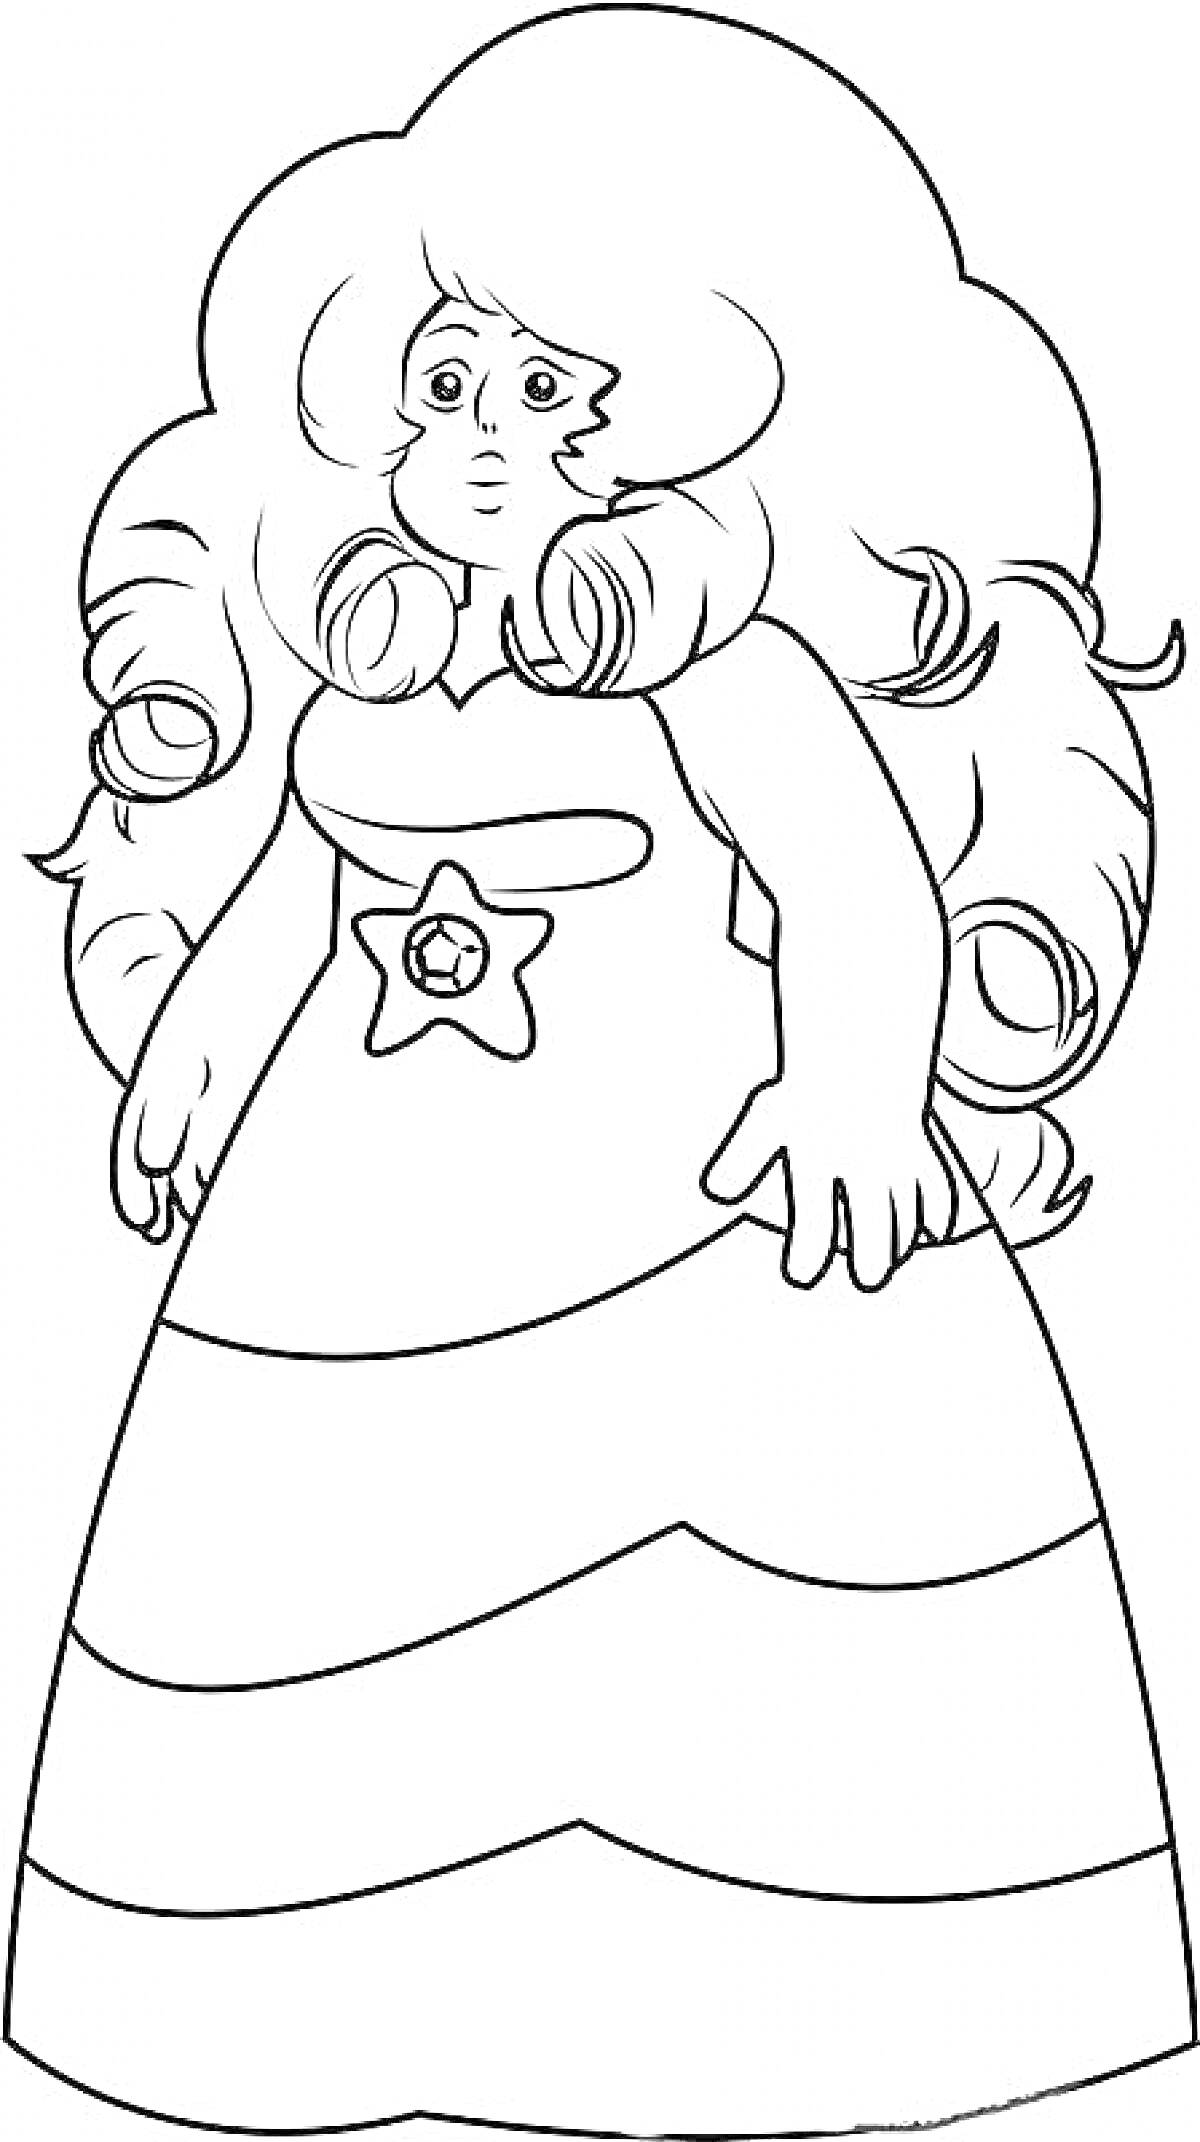 Раскраска персонажа с длинными волосами, в платье со звездой на талии и полосками